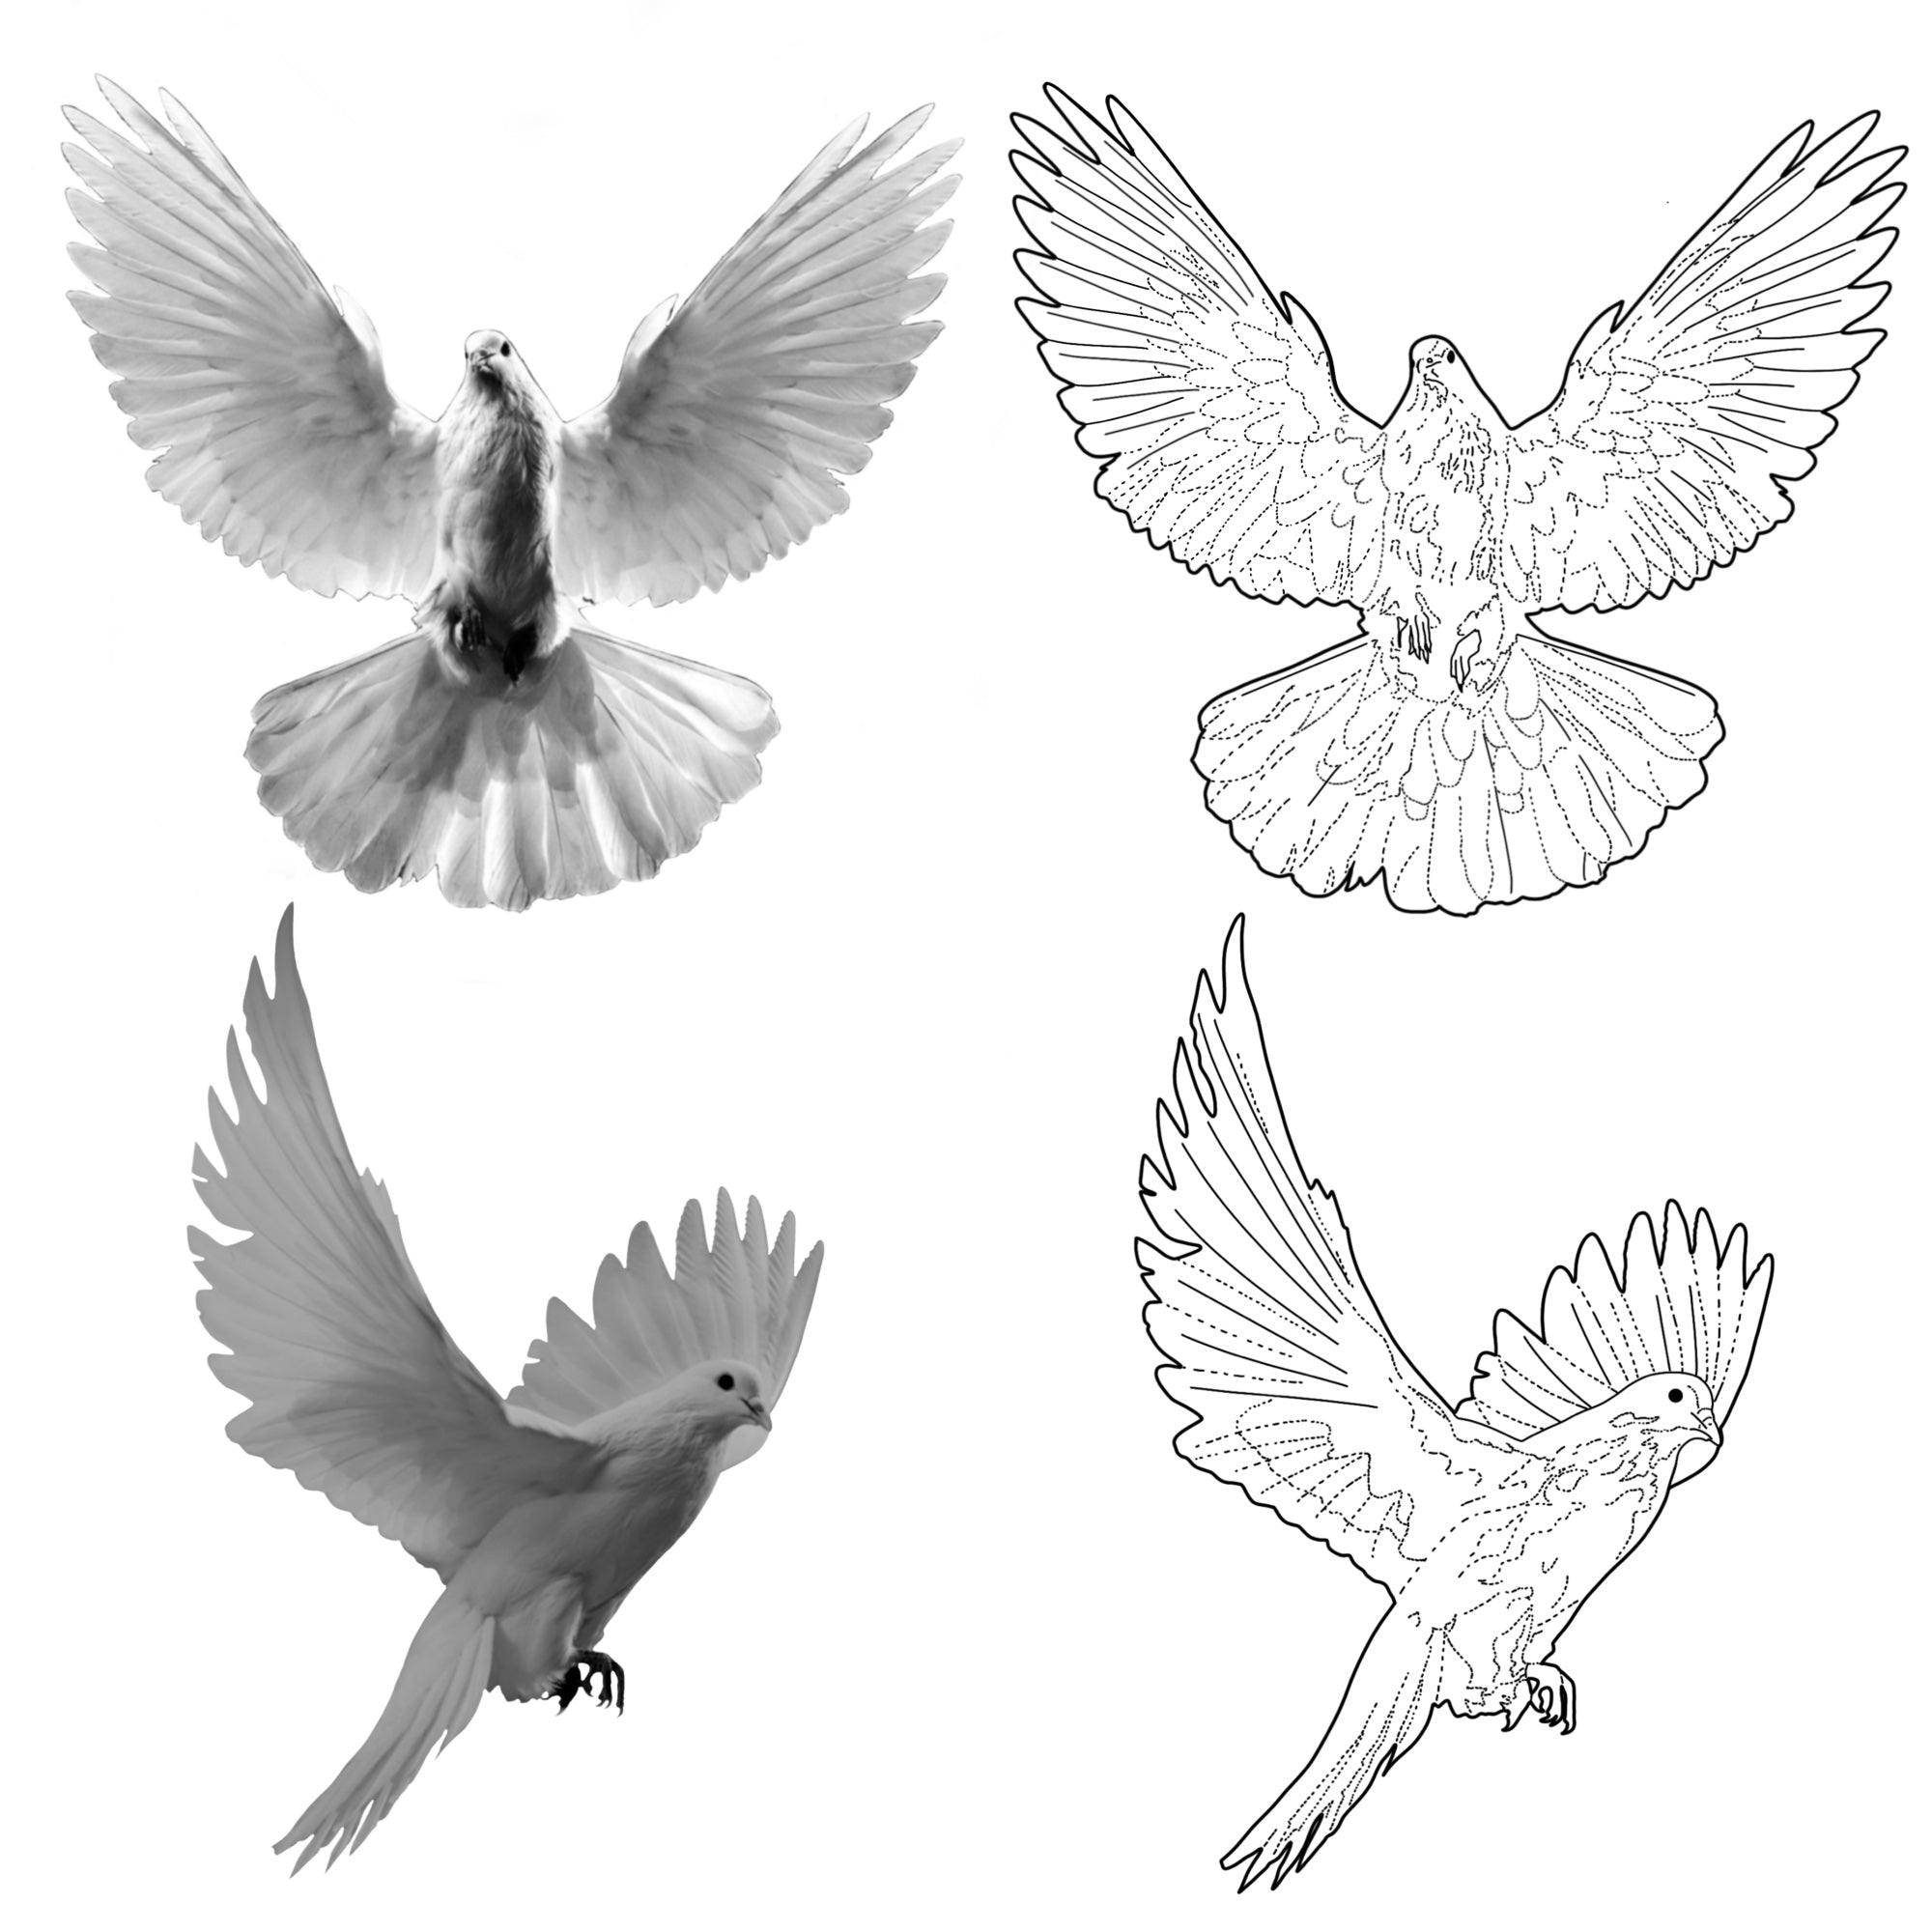 Nếu bạn là một nghệ sĩ xăm hình chuyên nghiệp, bộ cọ mẫu hình xăm chim bồ câu trắng dành cho Procreate sẽ giúp bạn tạo ra những tác phẩm nghệ thuật đẹp và sáng tạo. Hãy truy cập trang web \